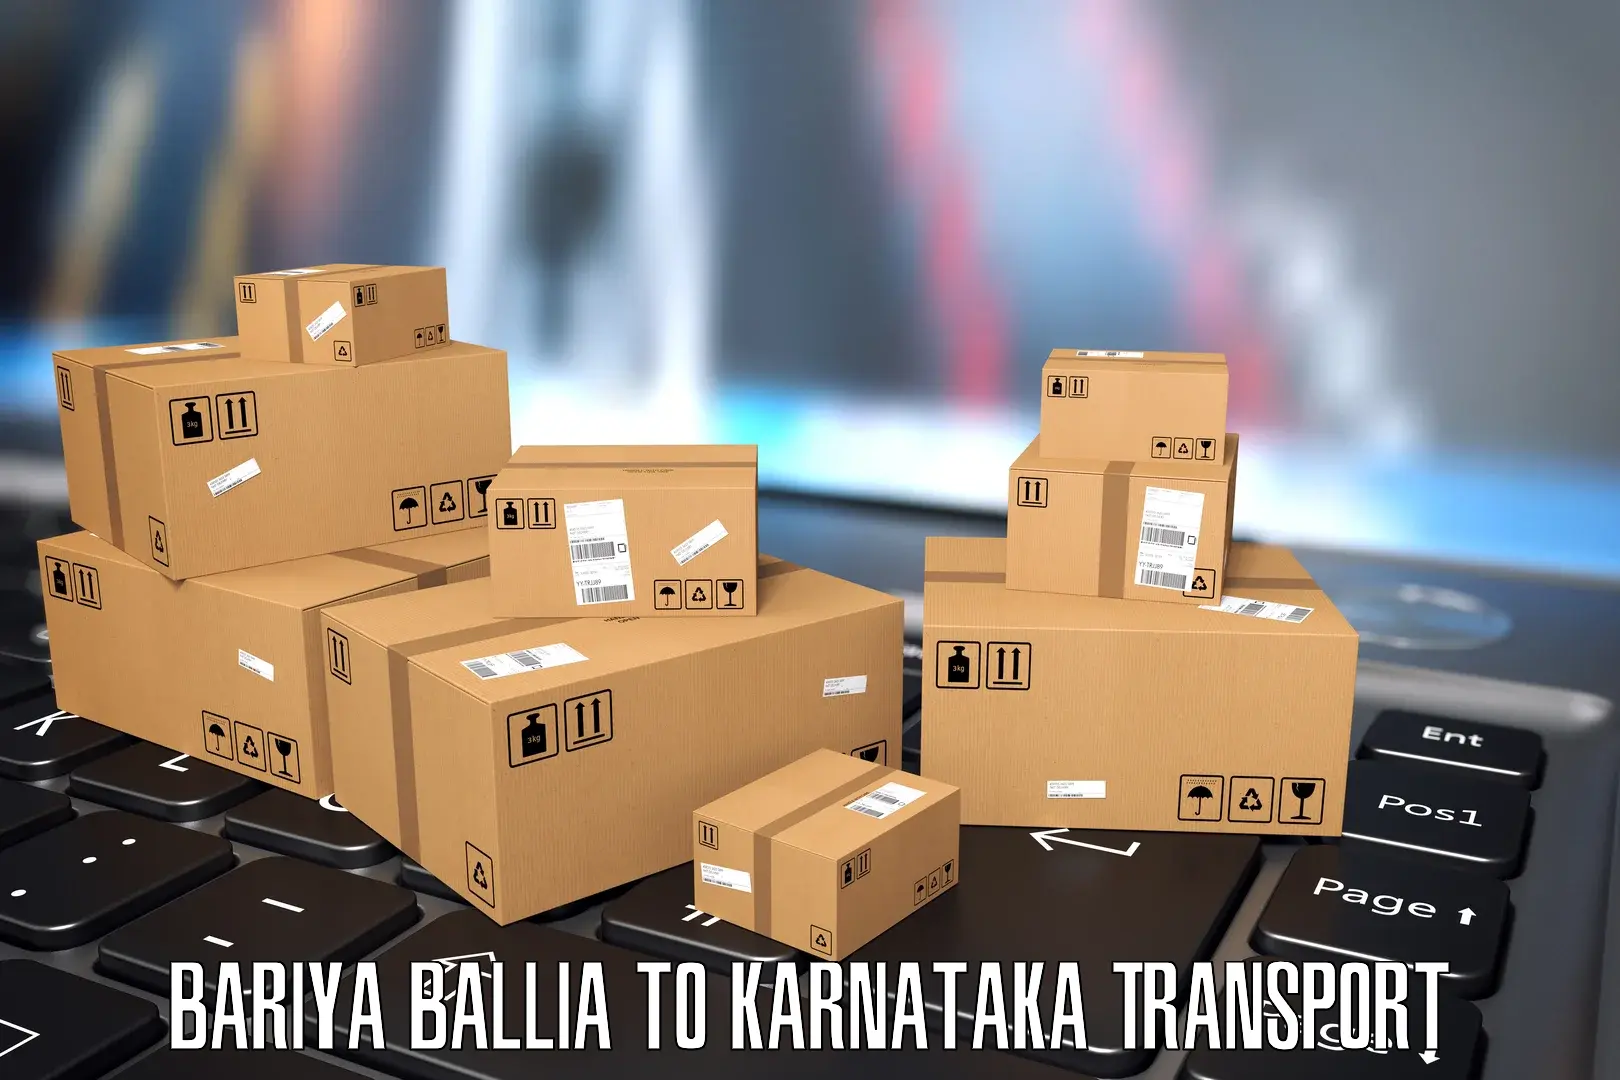 Daily transport service Bariya Ballia to Dakshina Kannada